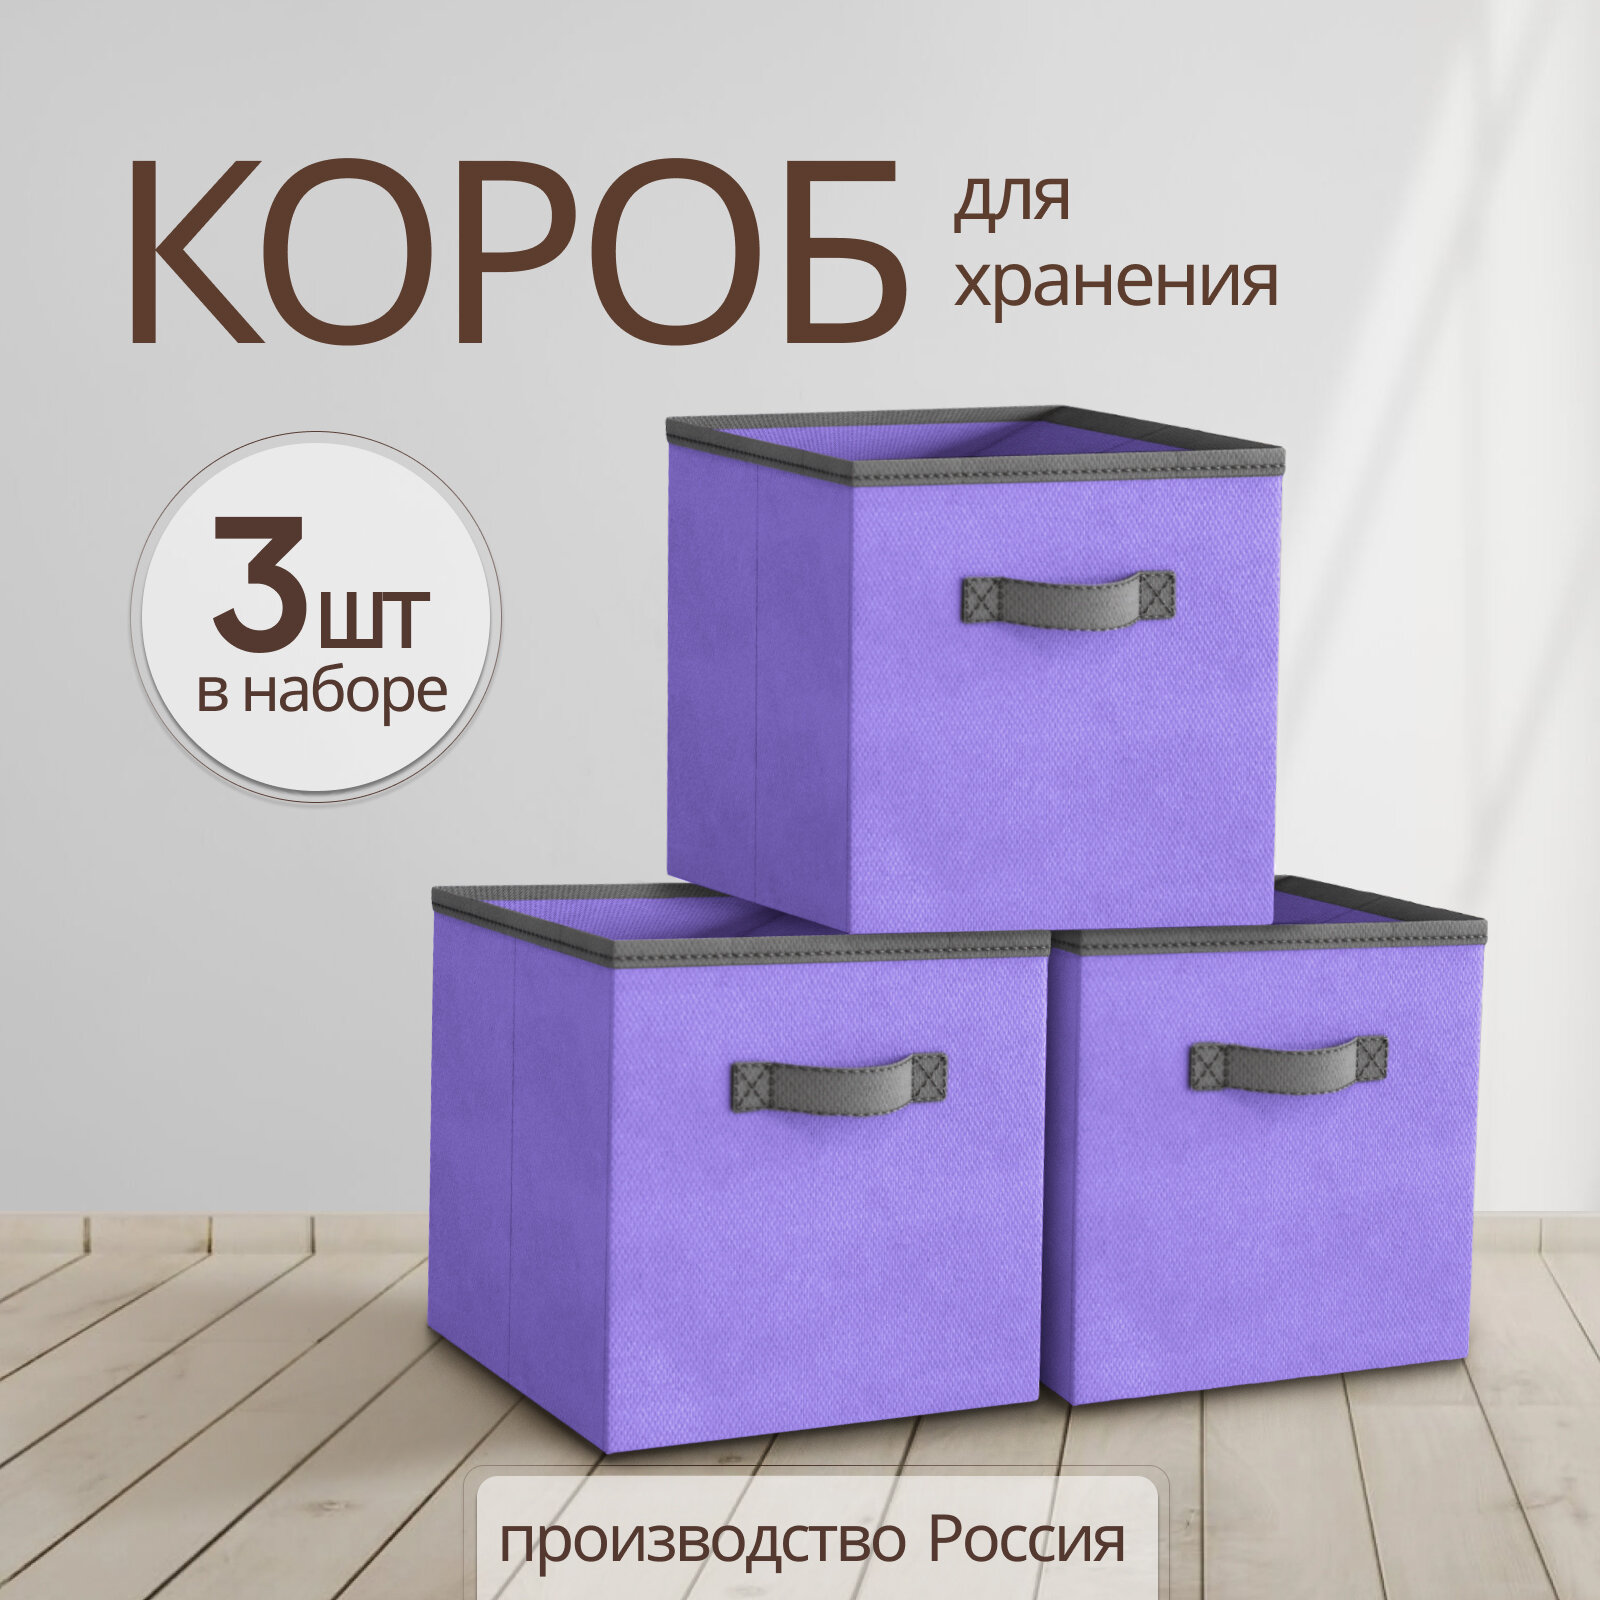 Storage boxes Коробки для хранения вещей, игрушек, белья, набор 3 шт, длина 31 см, ширина 31 см, высота 31см, фиолетовый цвет